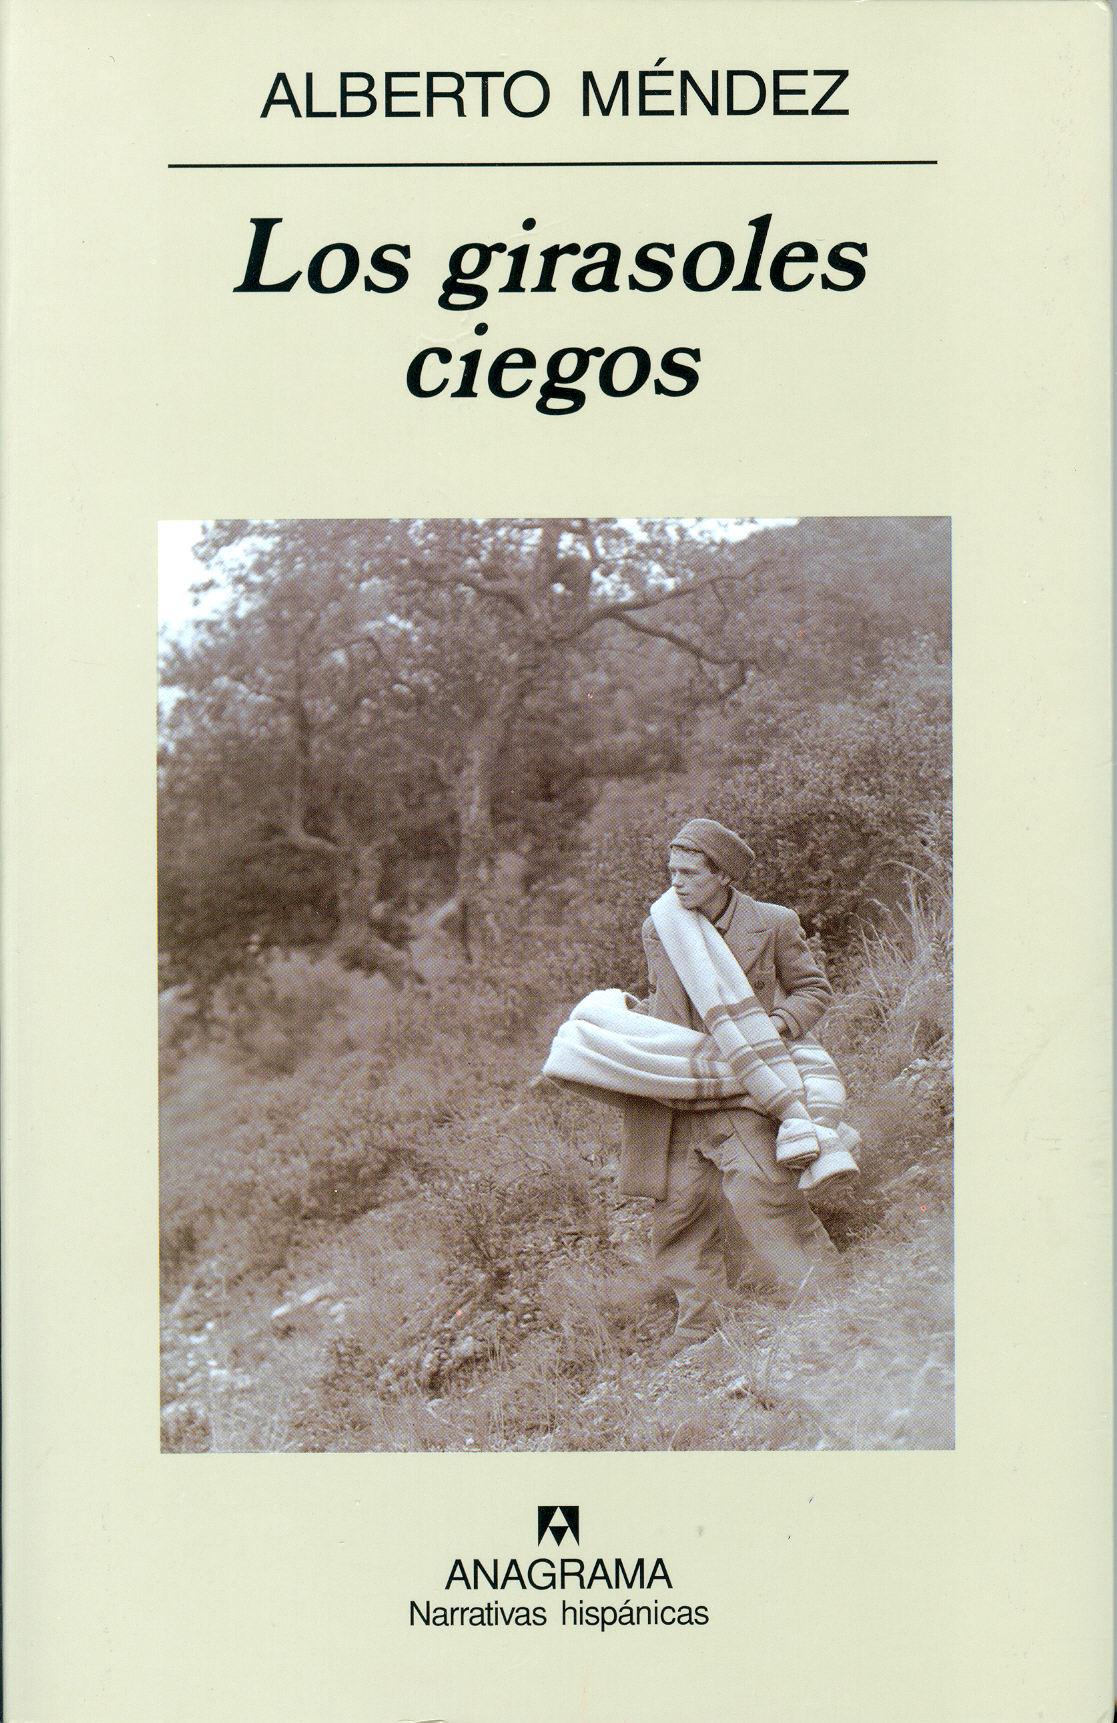 Los girasoles ciegos (Alberto Méndez)